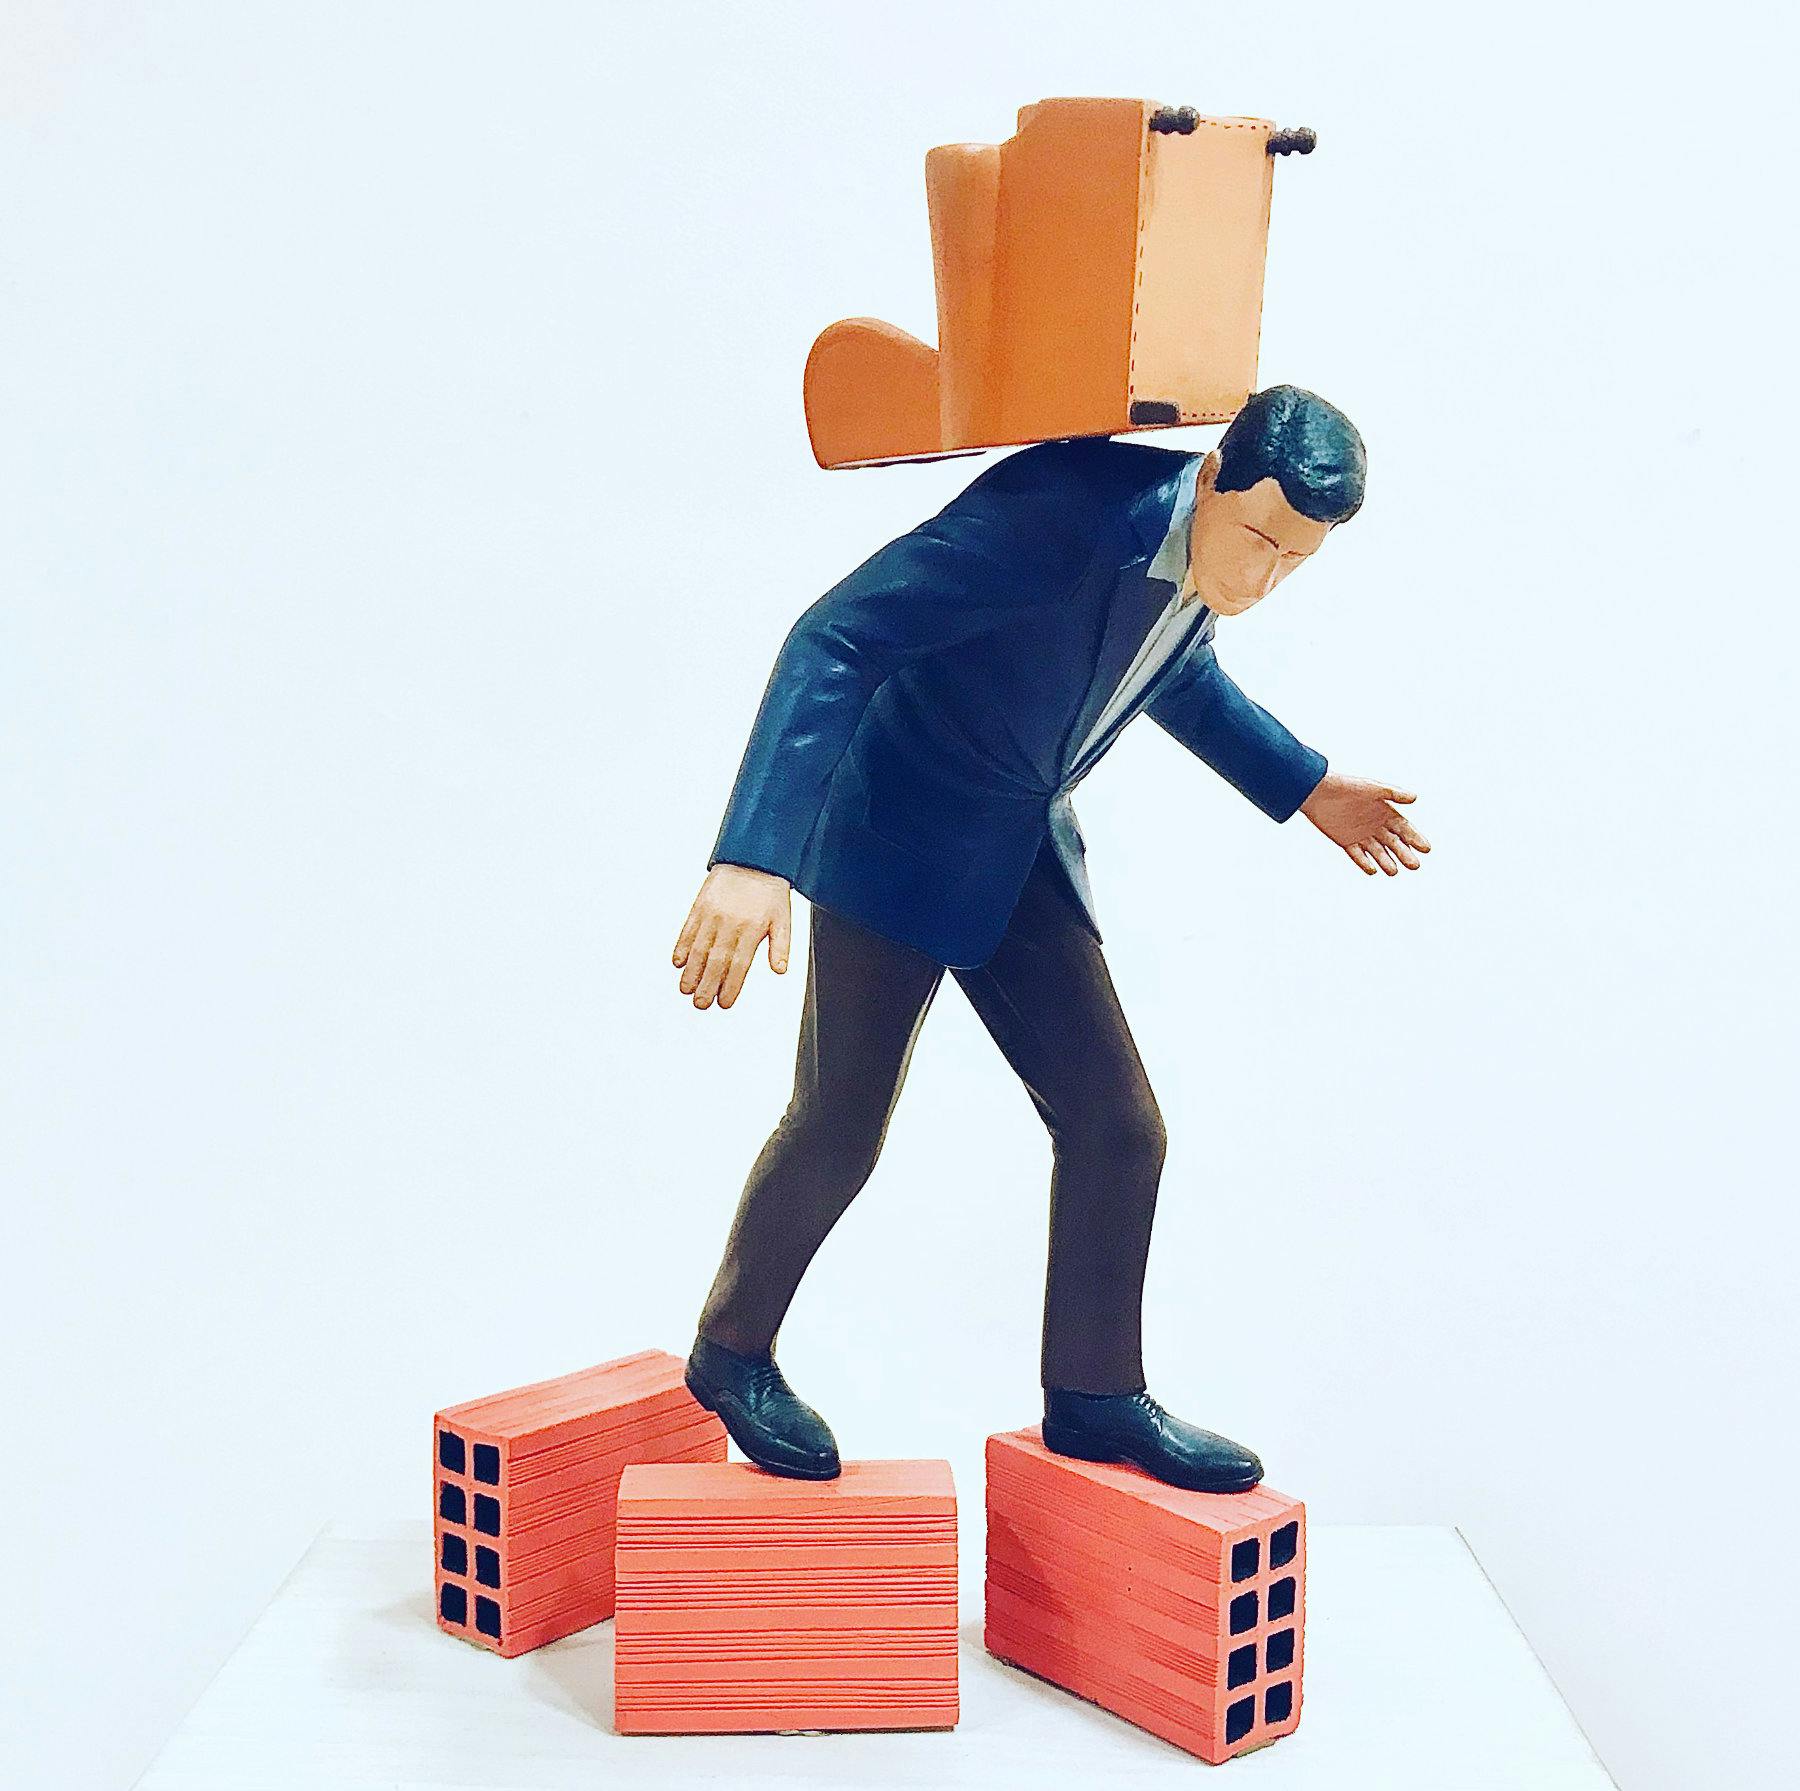 Figura de un hombre con traje haciendo equilibrismo sobre varios ladrillos